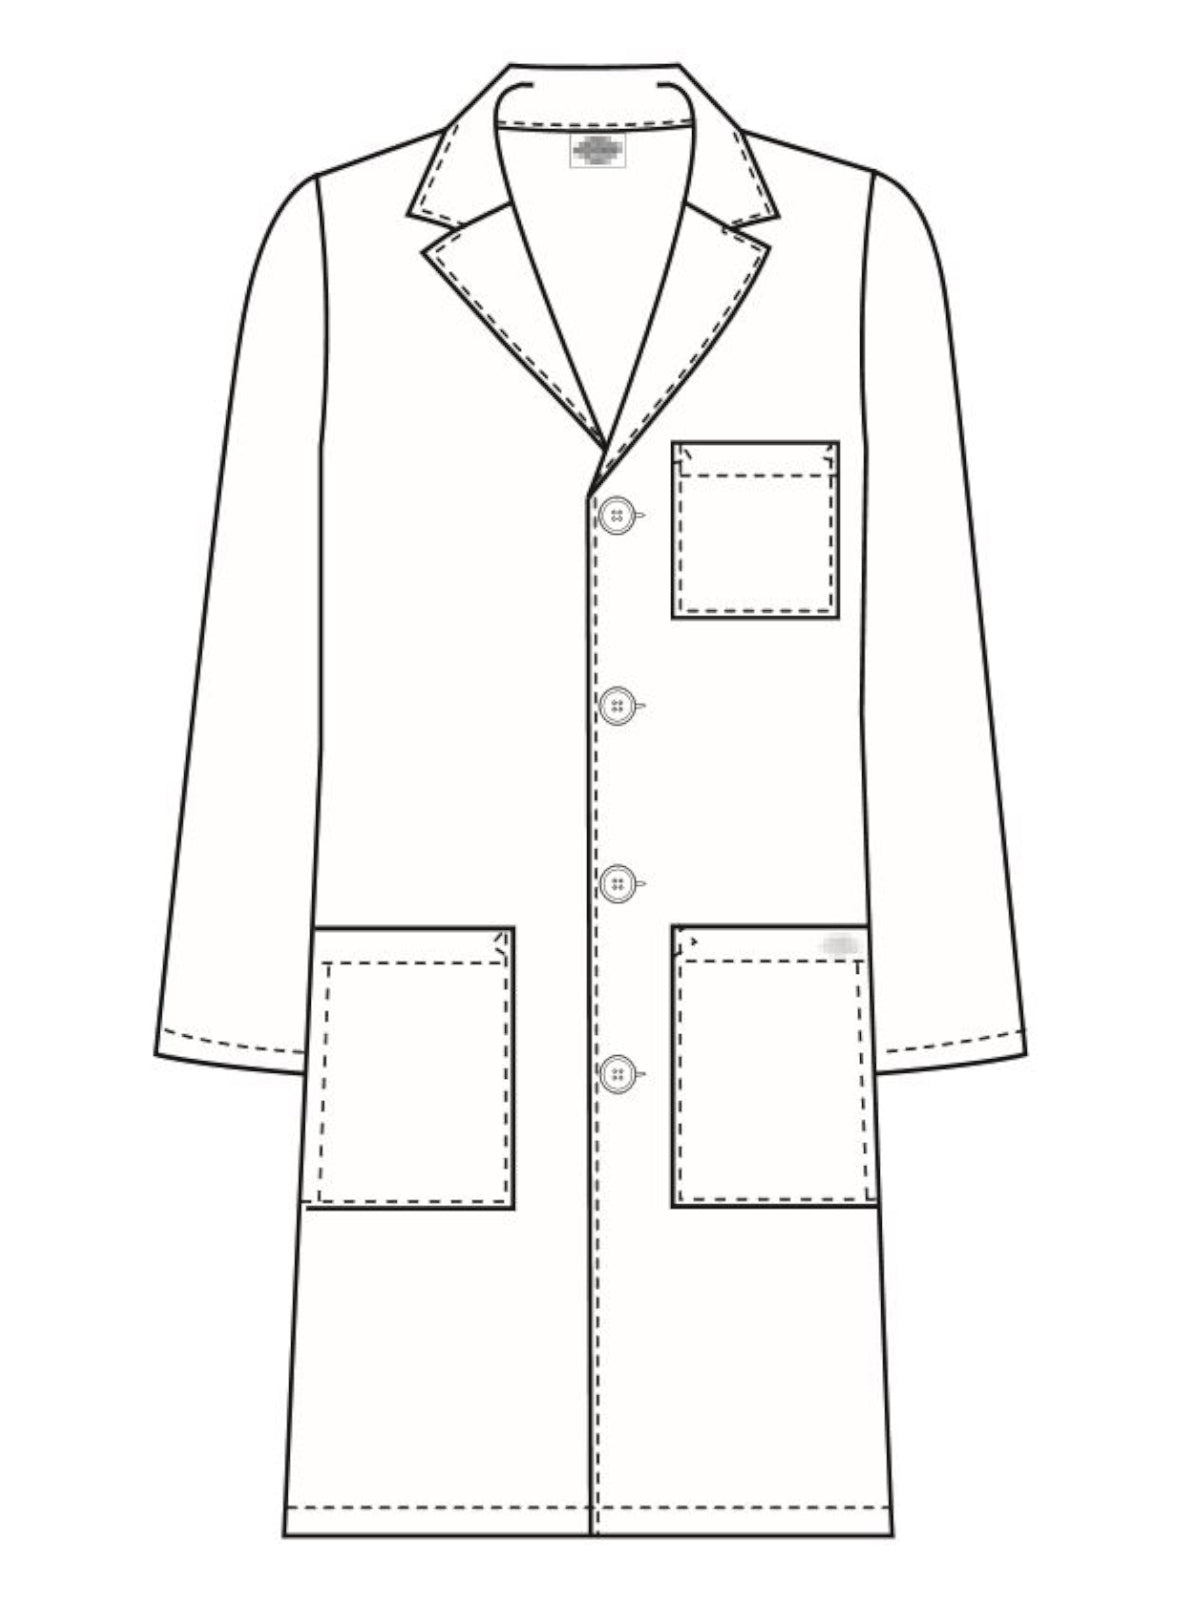 Unisex 40" Lab Coat